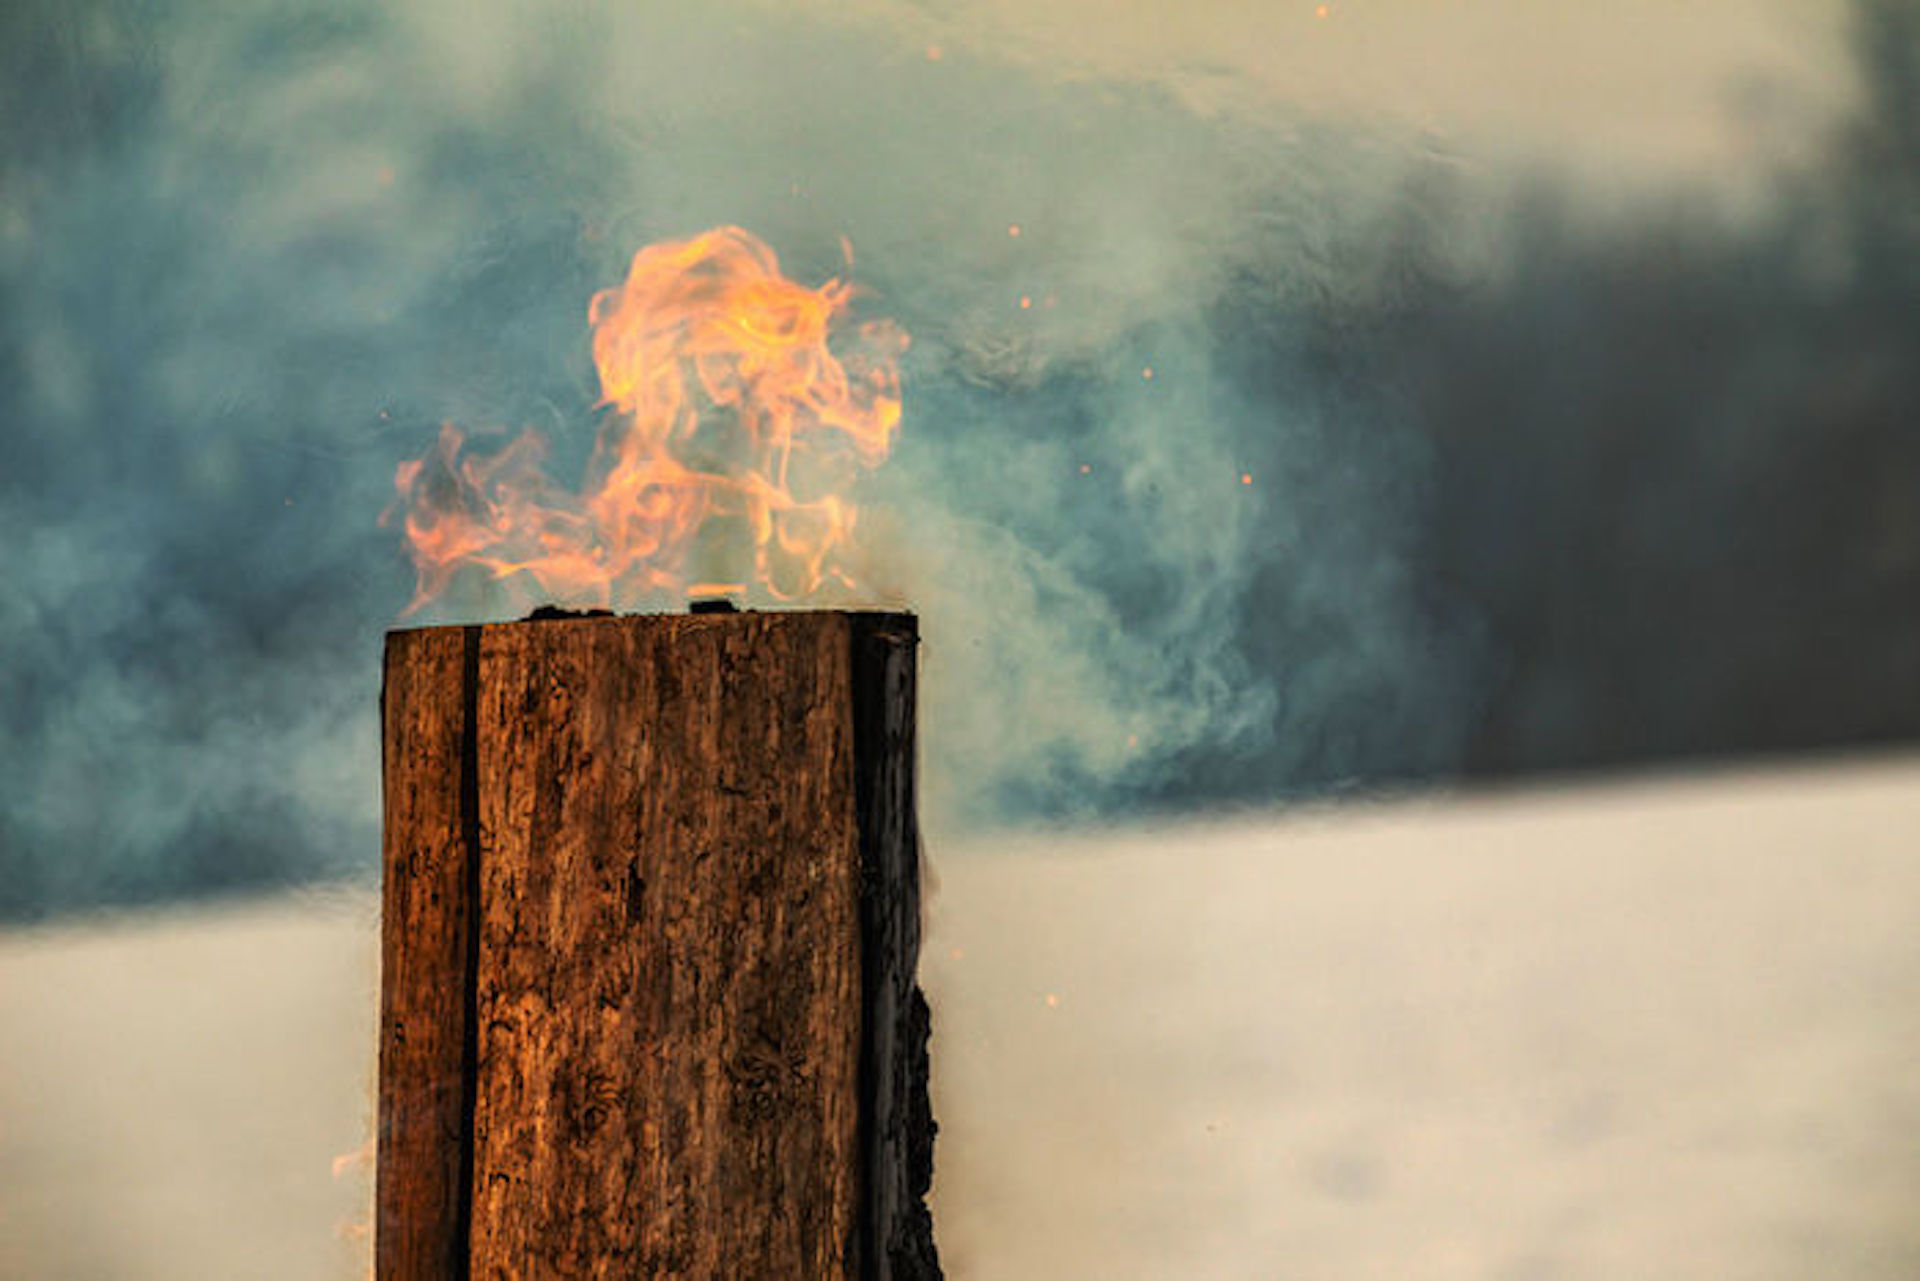 北欧伝統のおしゃれな焚き火 スウェーデントーチ 美しい炎でワンランク上のキャンプナイトを